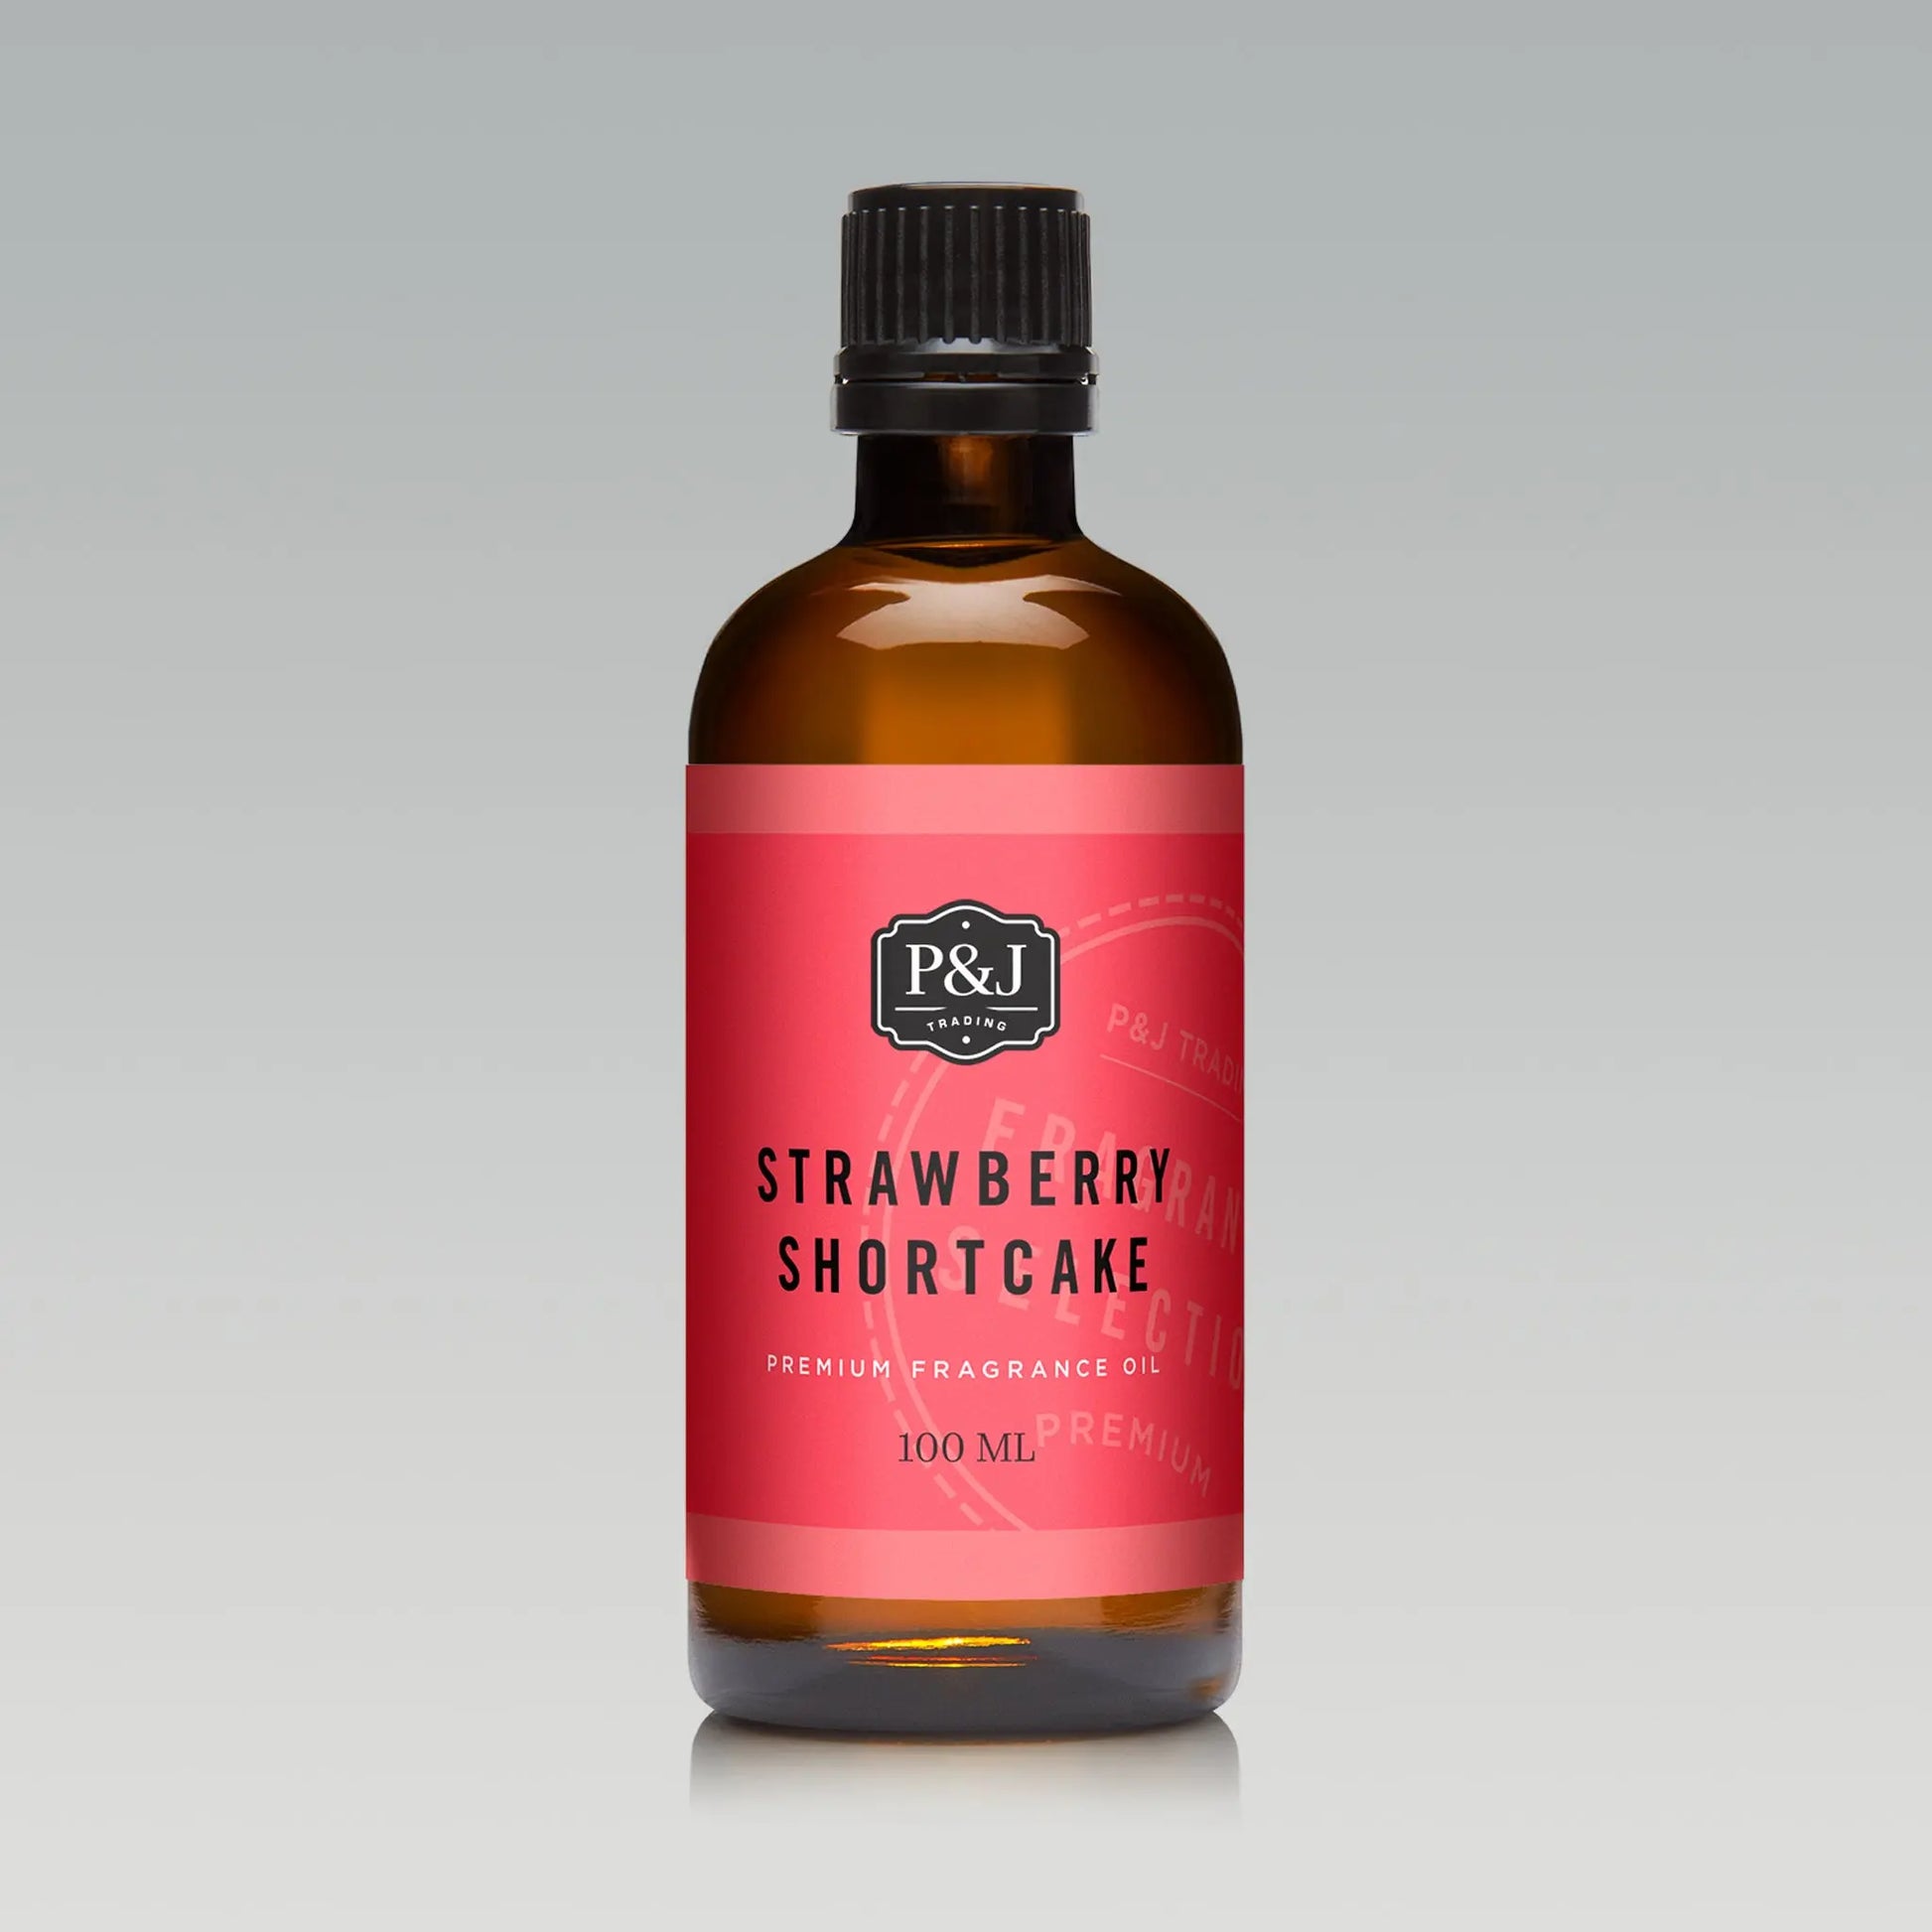 Strawberry Shortcake Body Oil